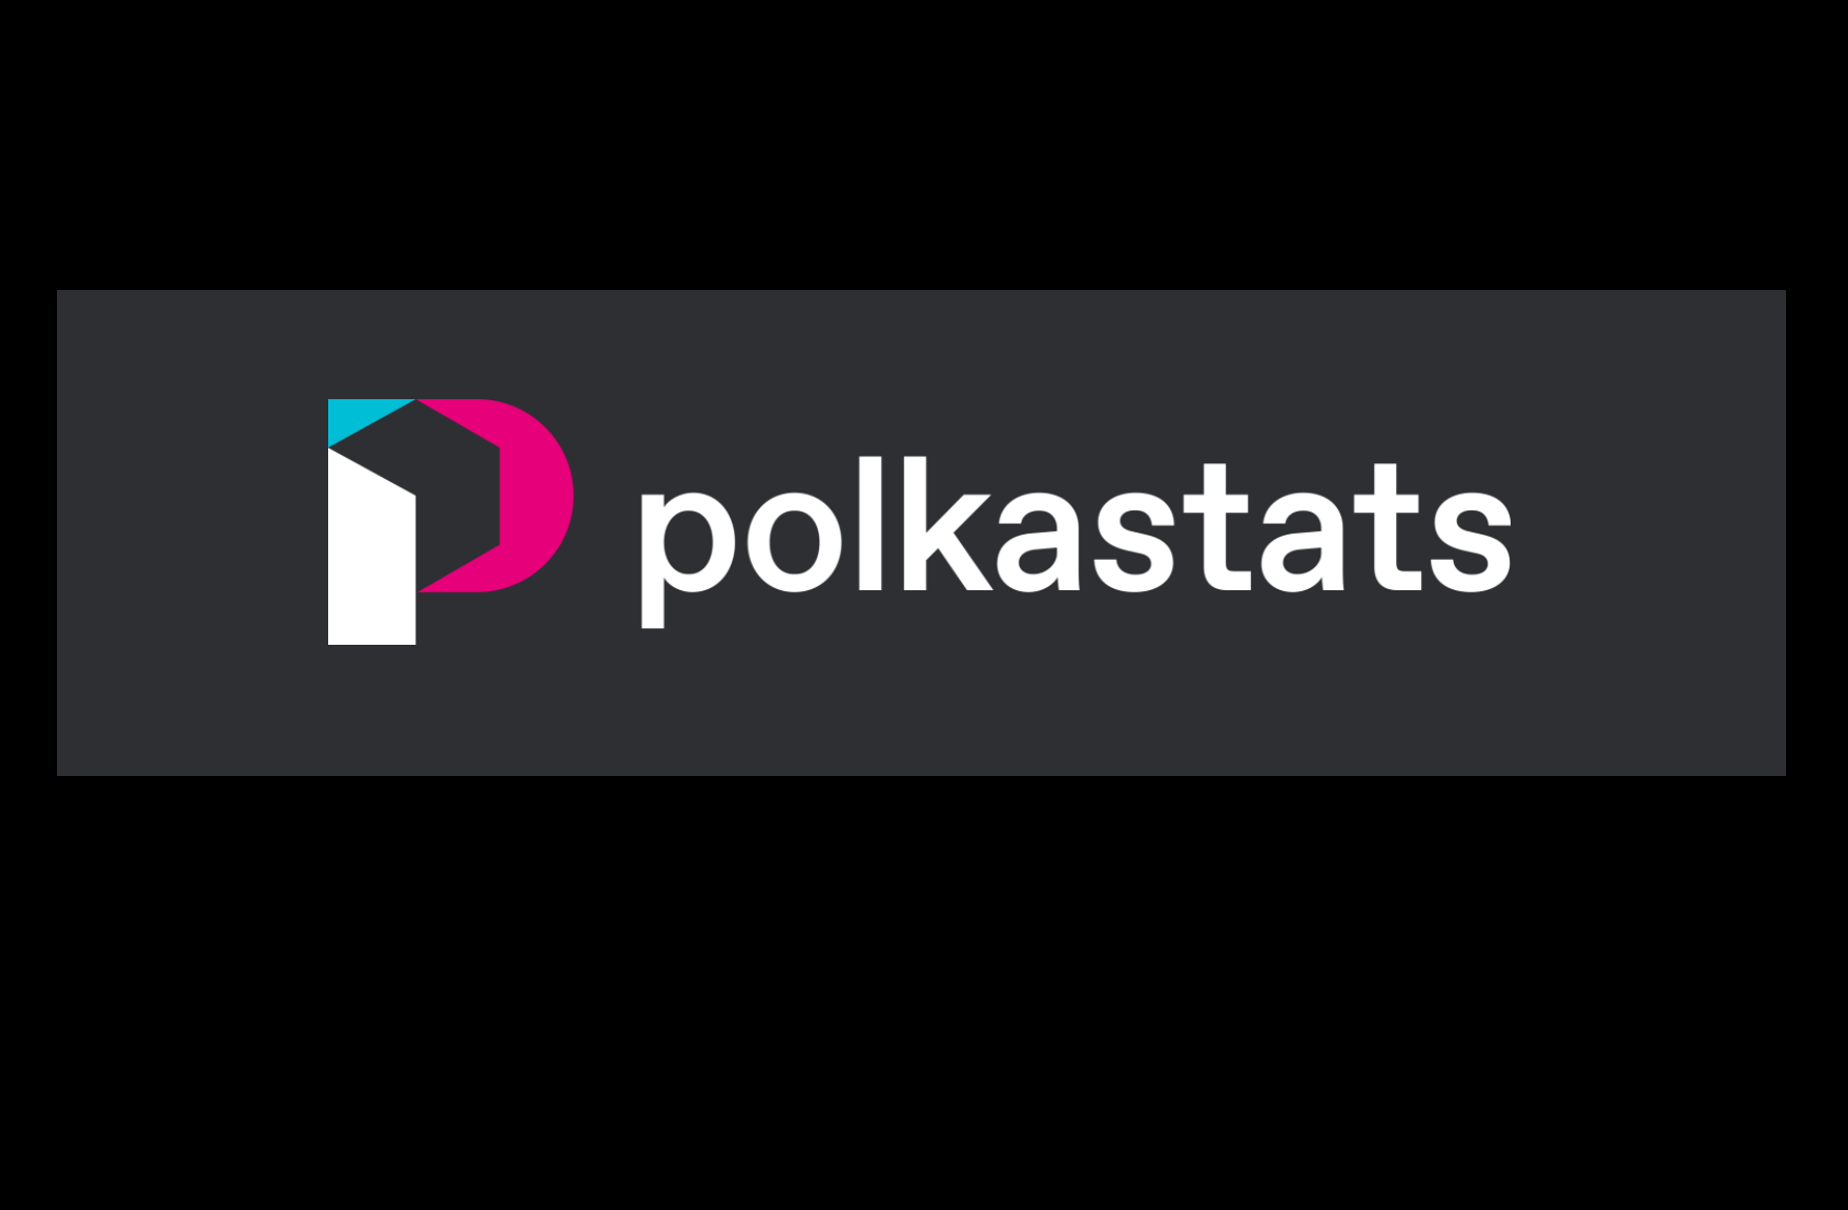 PolkaStats